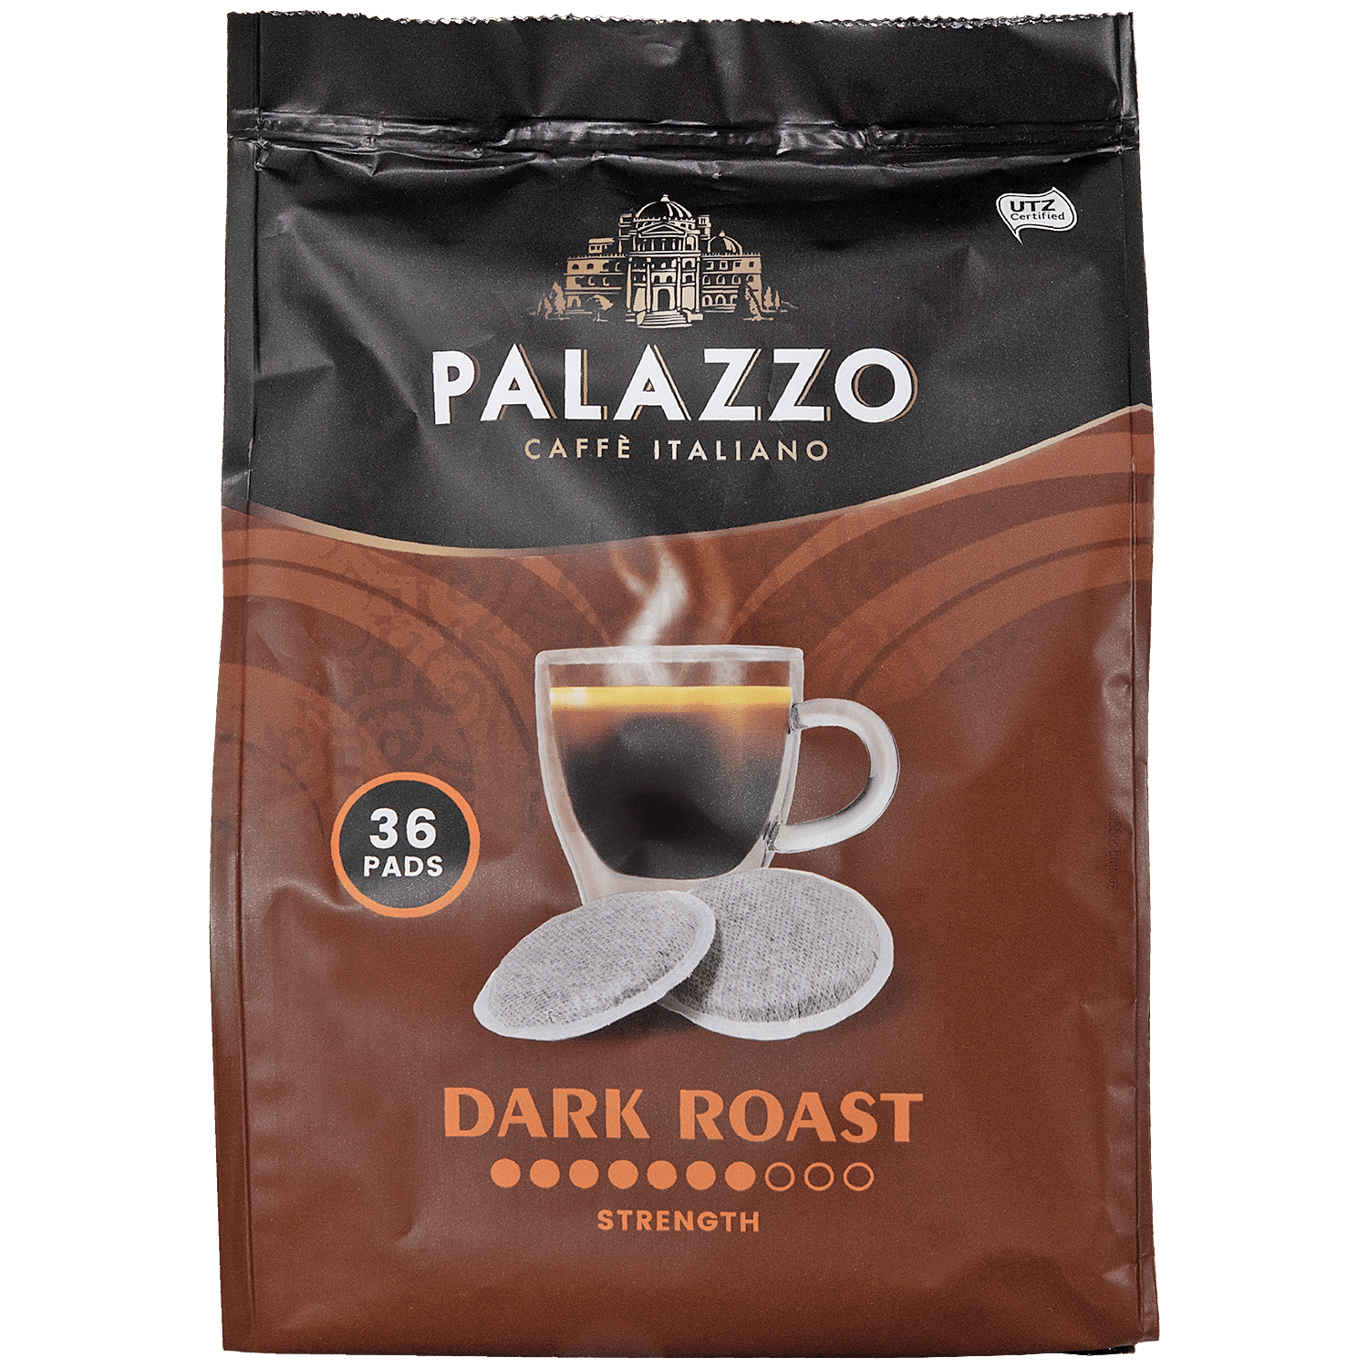 Palazzo koffiepads Dark Roast |